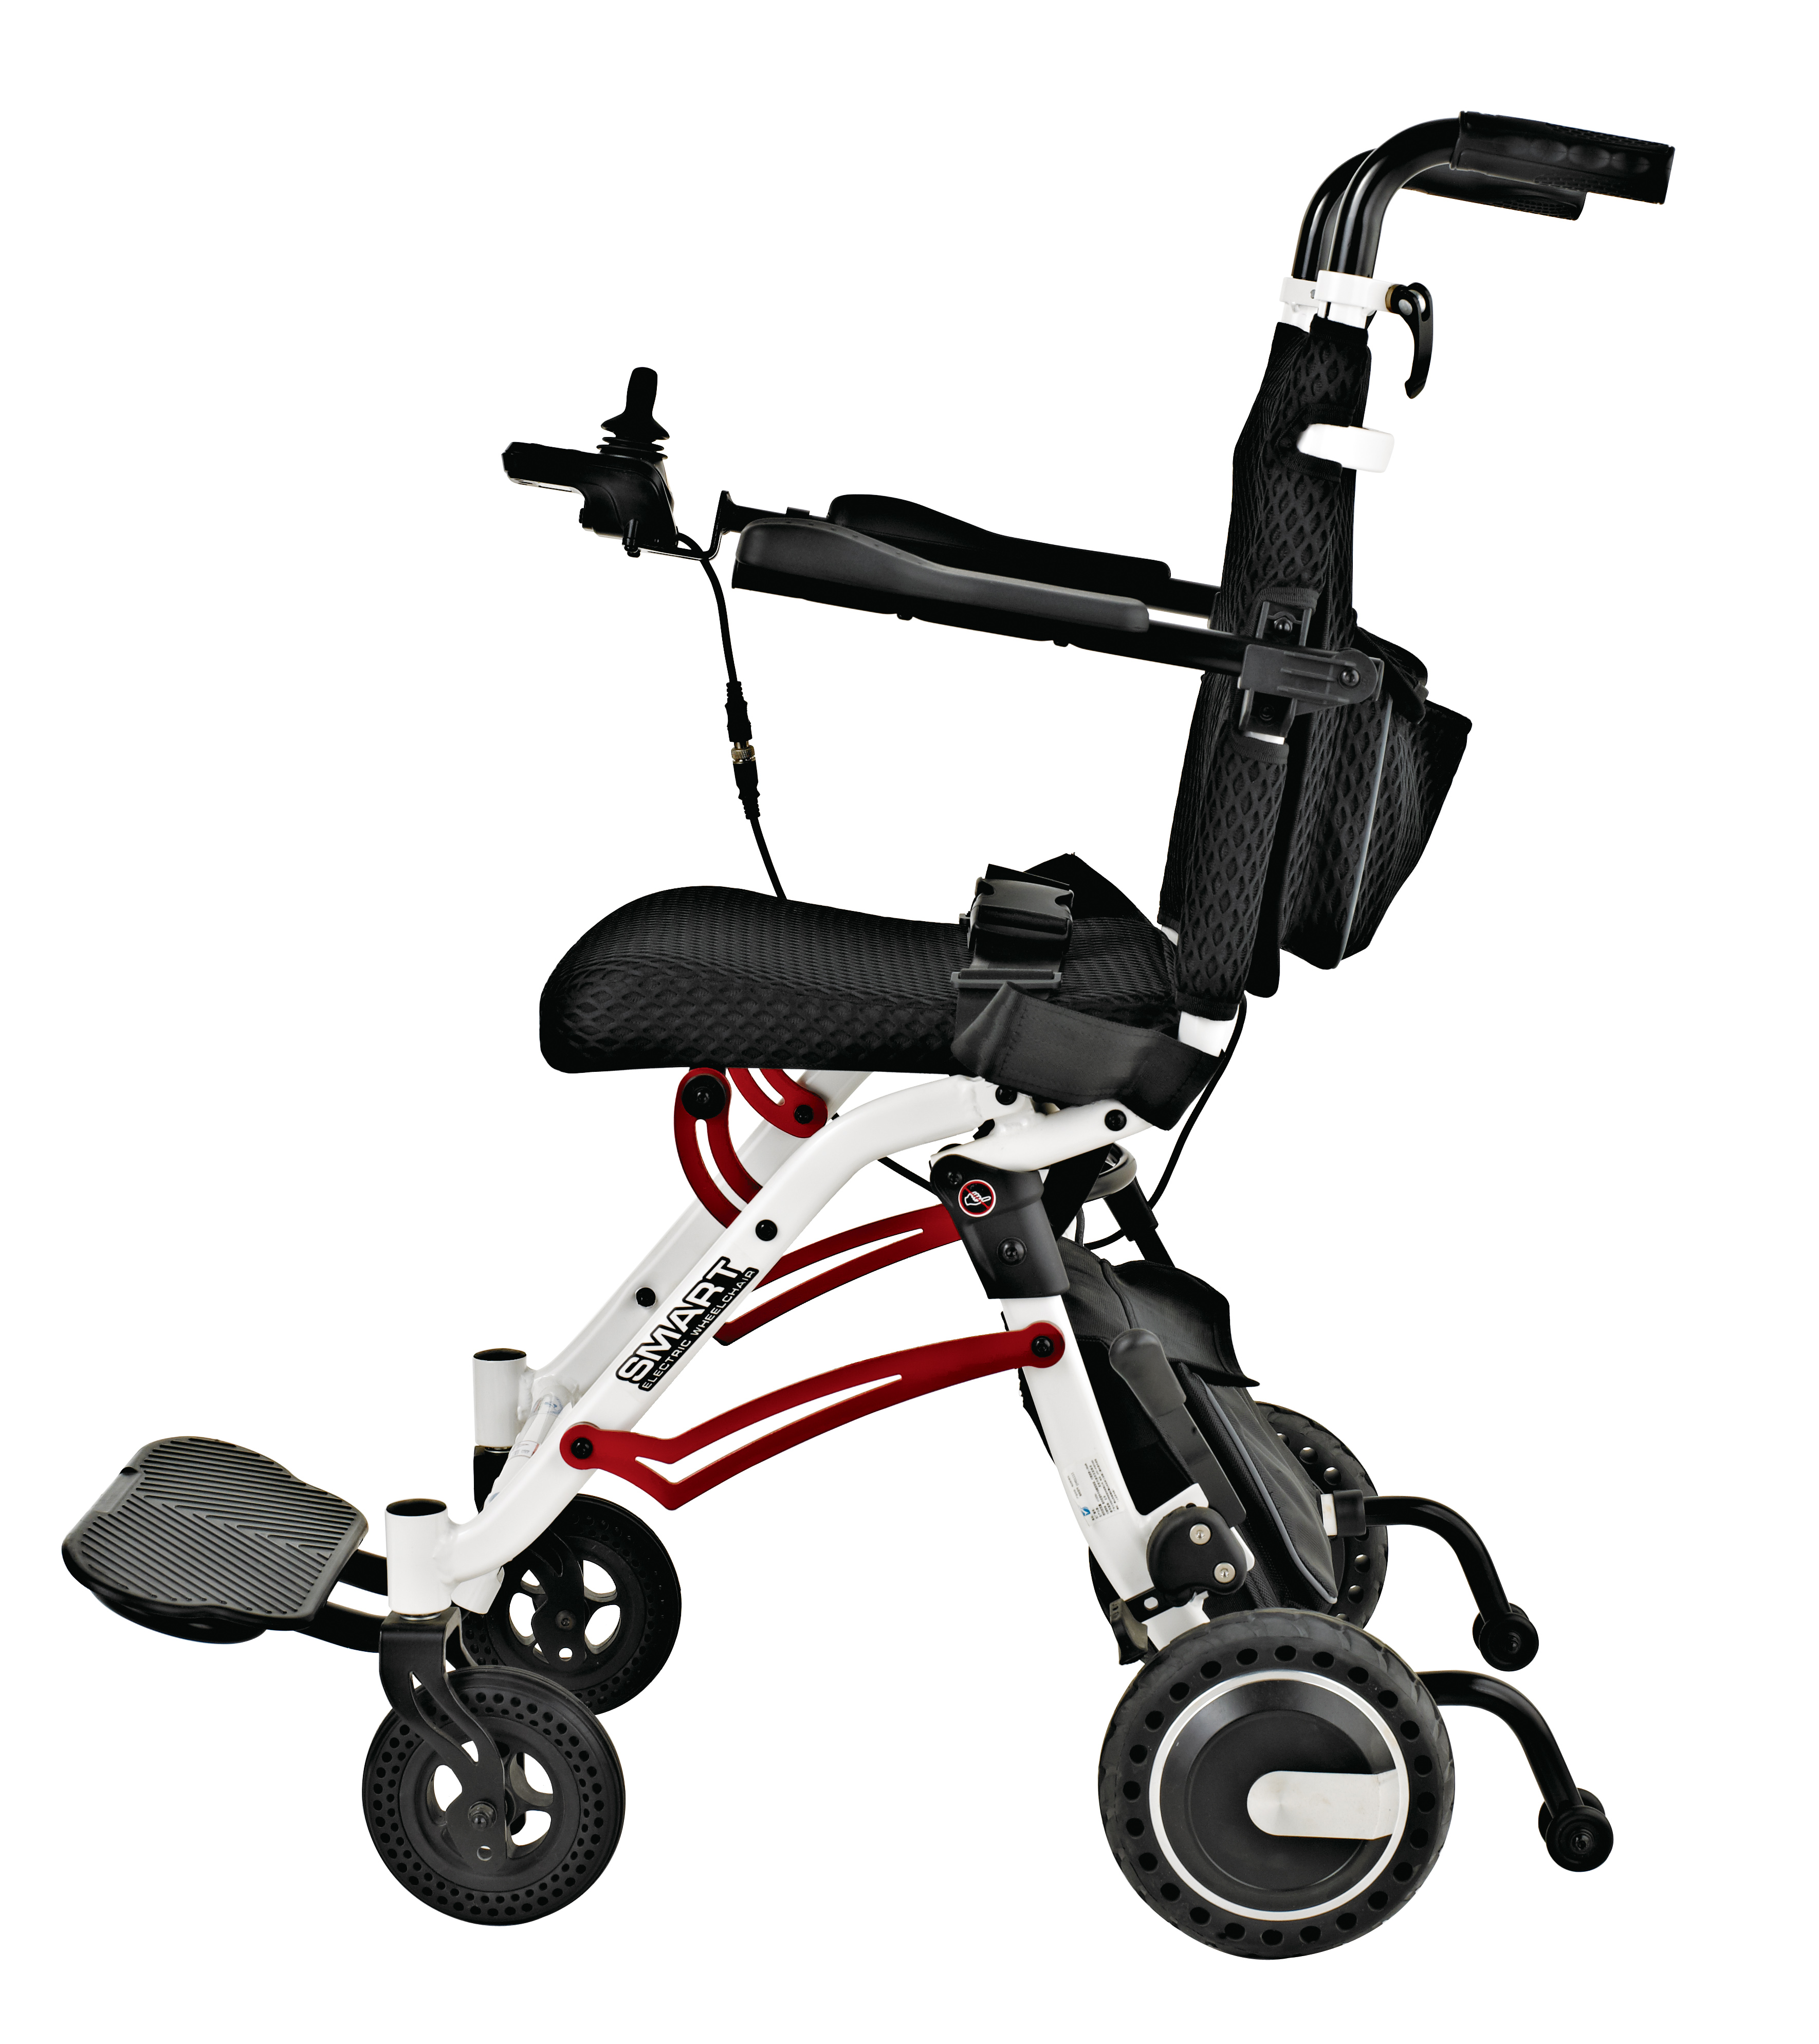 Купити Надлегка електрична інвалідна коляска для подорожей,Надлегка електрична інвалідна коляска для подорожей Ціна ,Надлегка електрична інвалідна коляска для подорожей Бренд,Надлегка електрична інвалідна коляска для подорожей Конструктор,Надлегка електрична інвалідна коляска для подорожей Ринок,Надлегка електрична інвалідна коляска для подорожей Компанія,